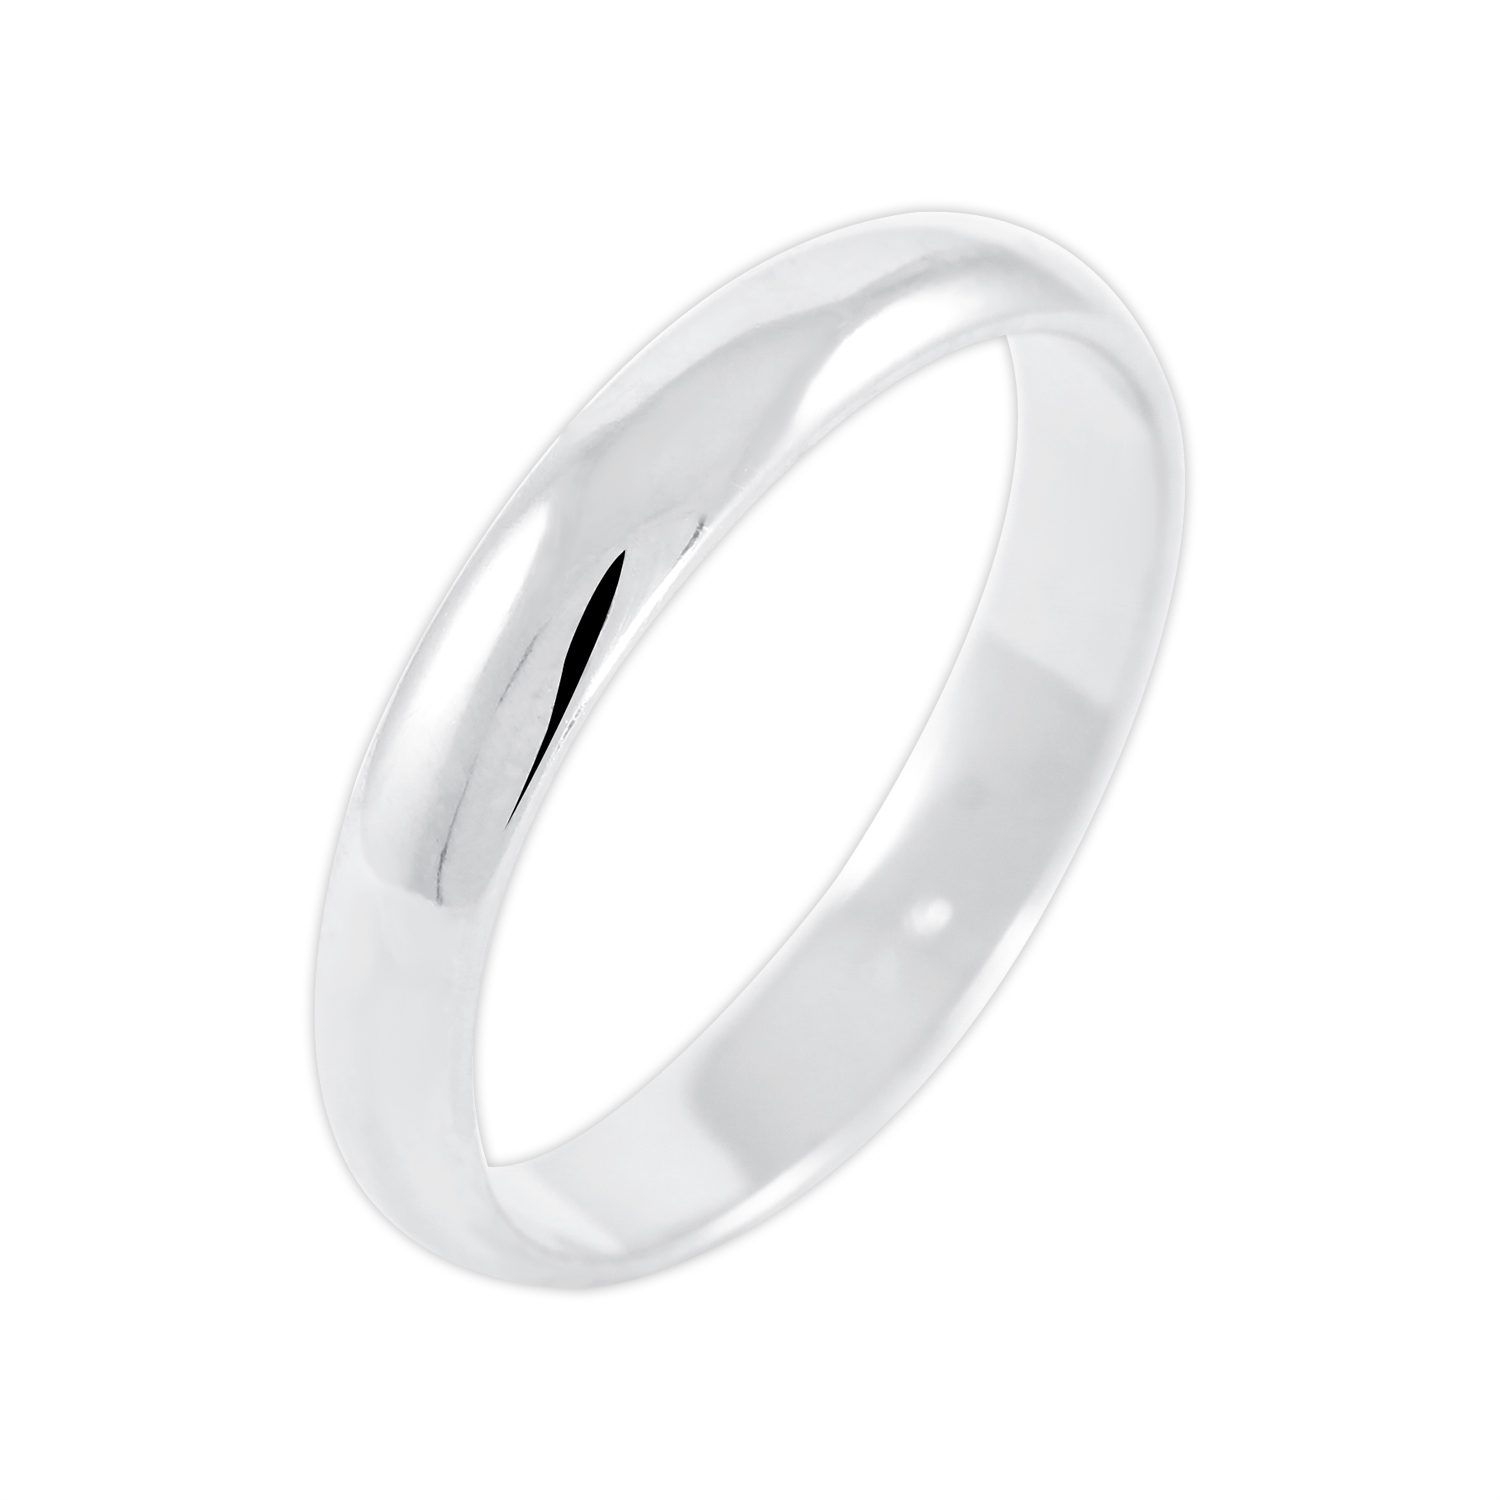 Brilio Silver Jemný strieborný prsteň 422 001 09060 04 53 mm